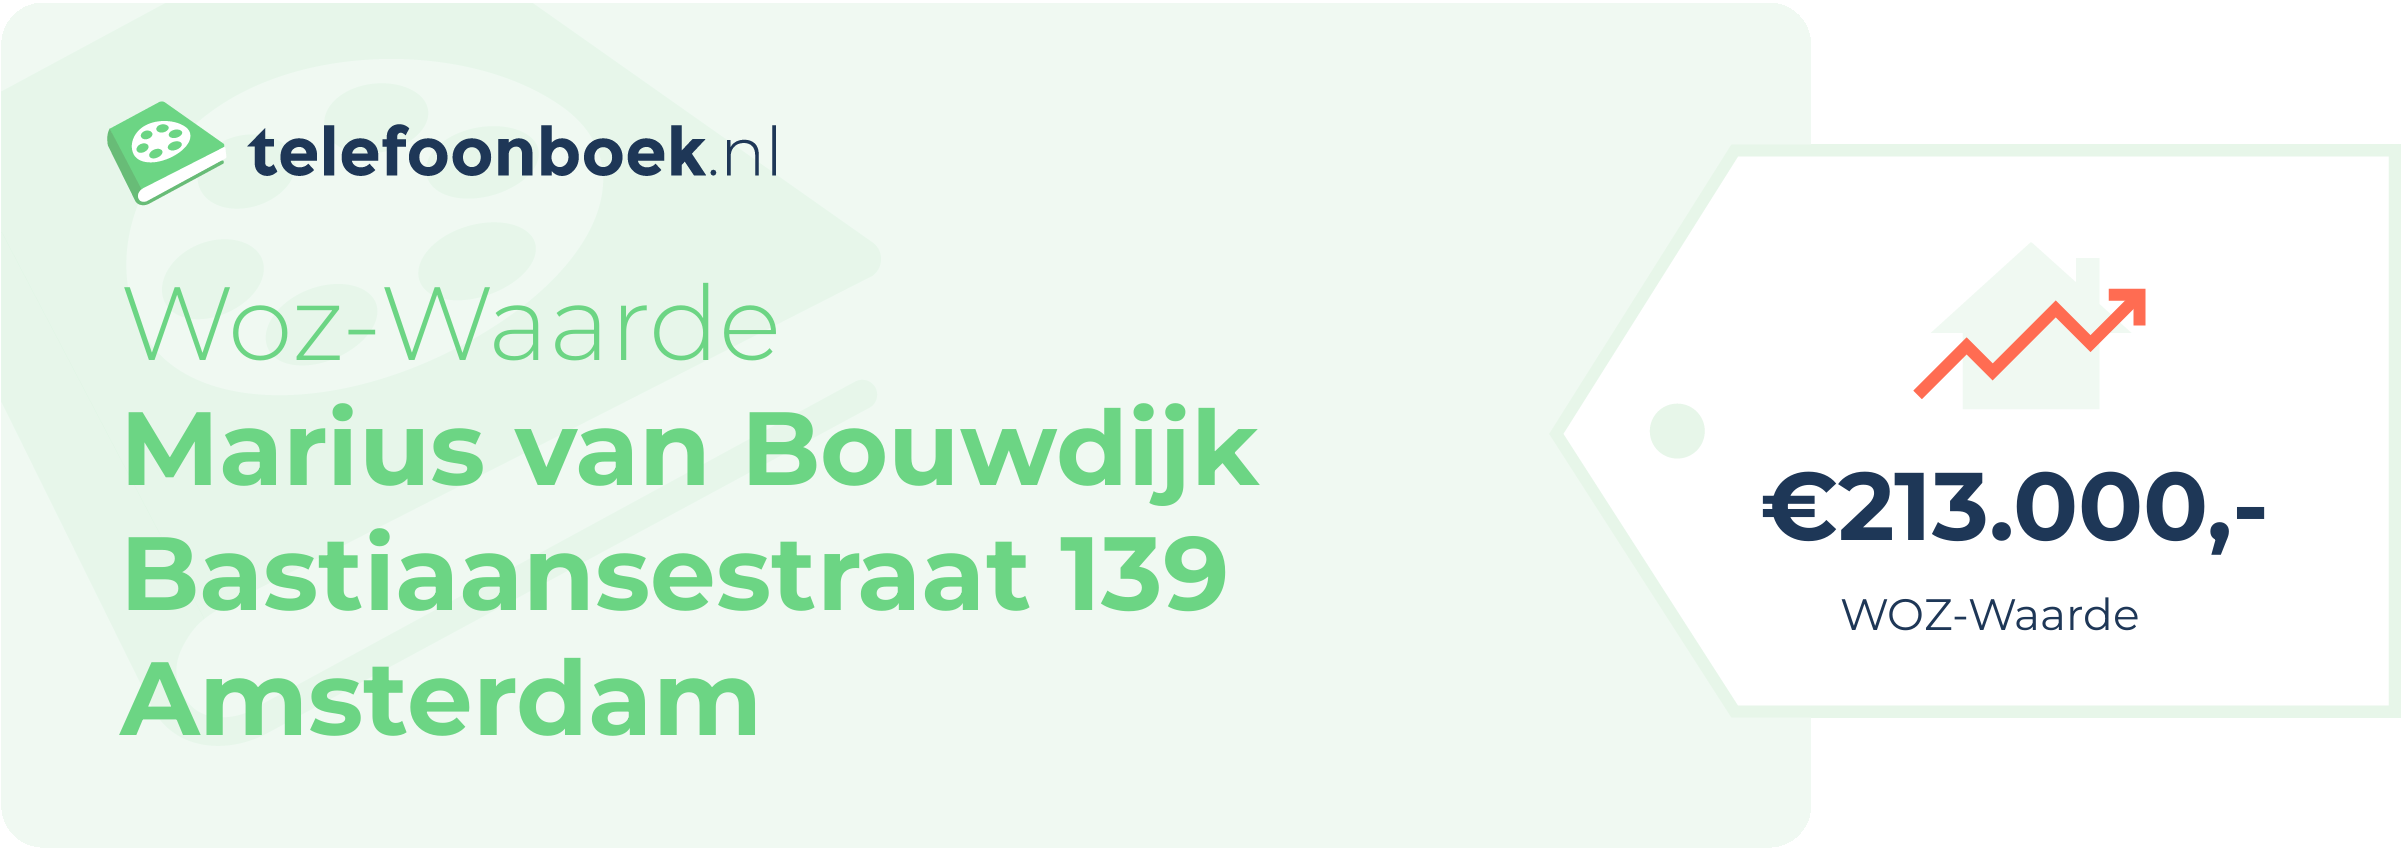 WOZ-waarde Marius Van Bouwdijk Bastiaansestraat 139 Amsterdam